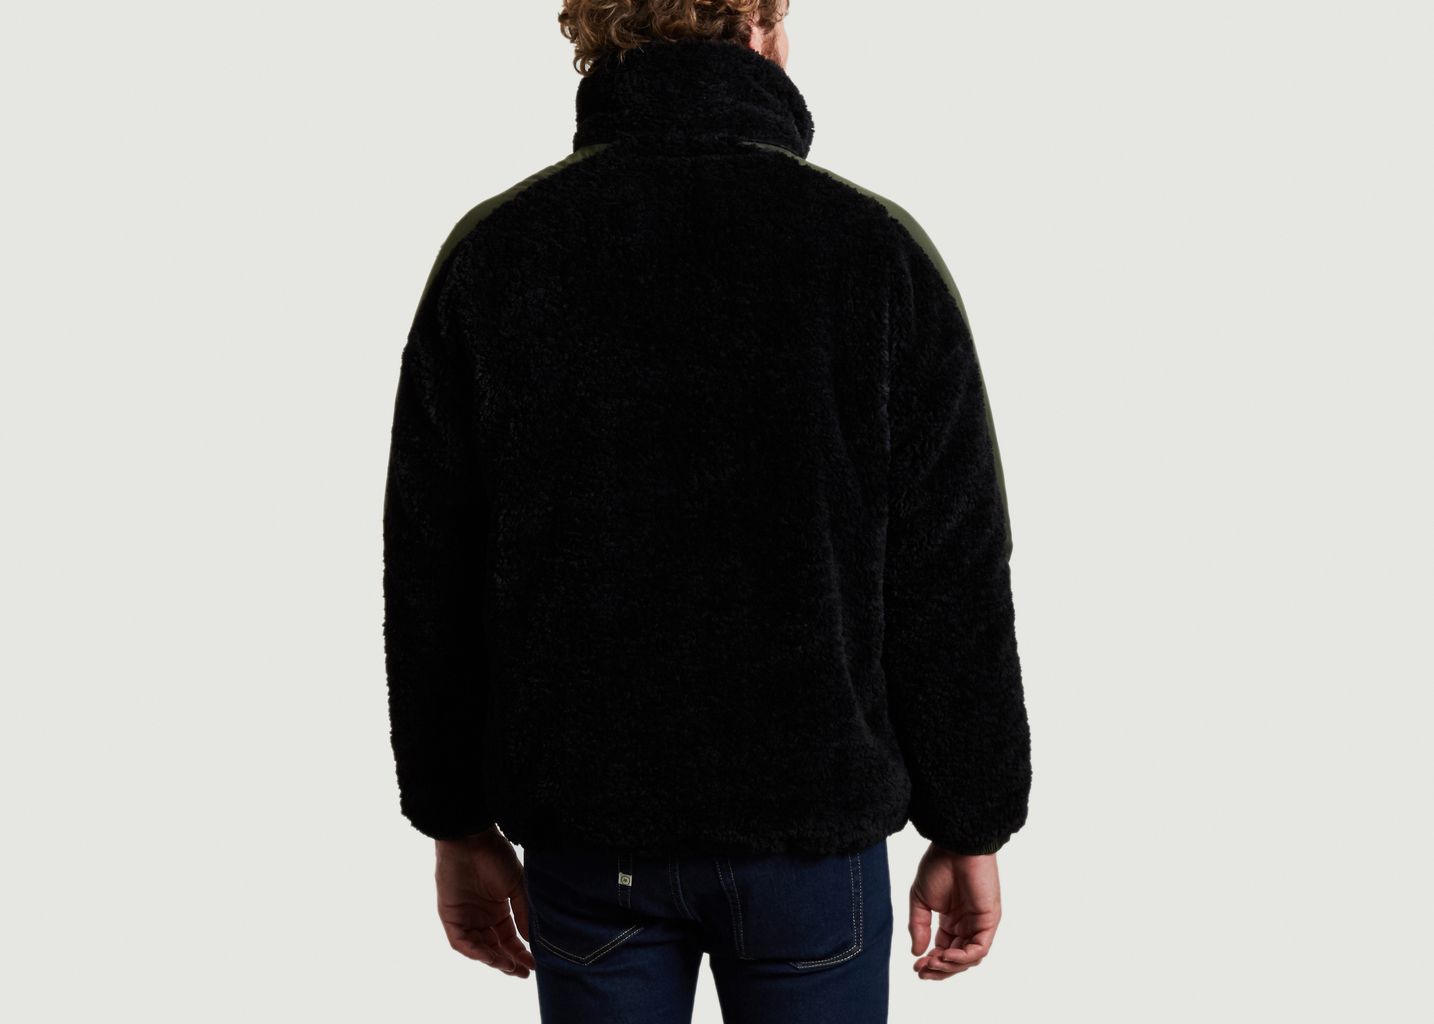 5018 oversize black faux fur sweatshirt - OOF WEAR